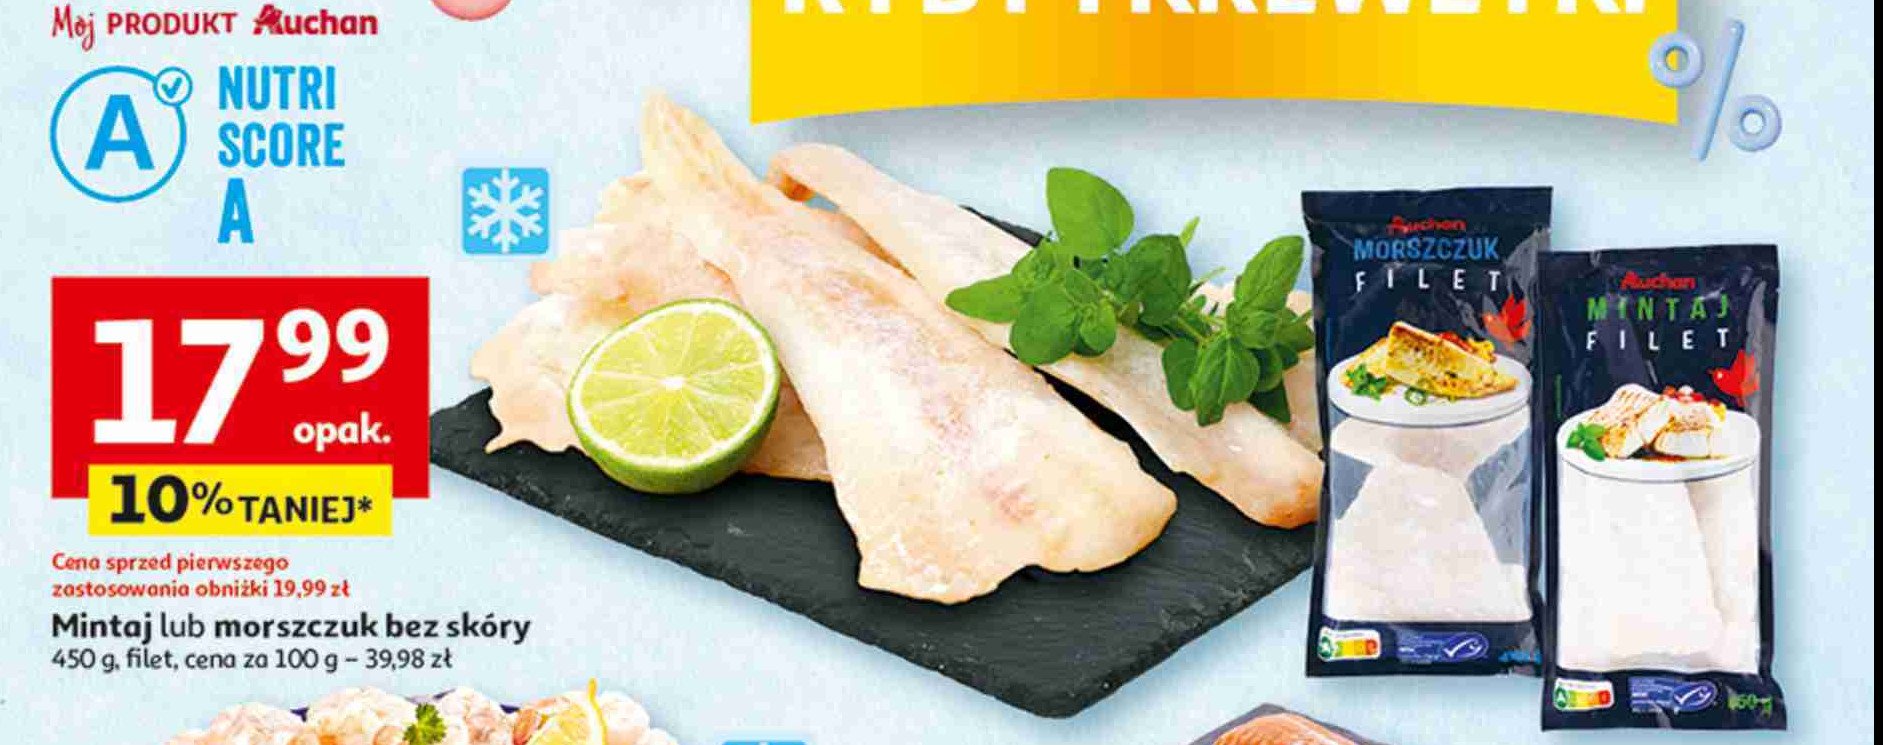 Filet z morszczuka argentyńskiego Auchan promocja